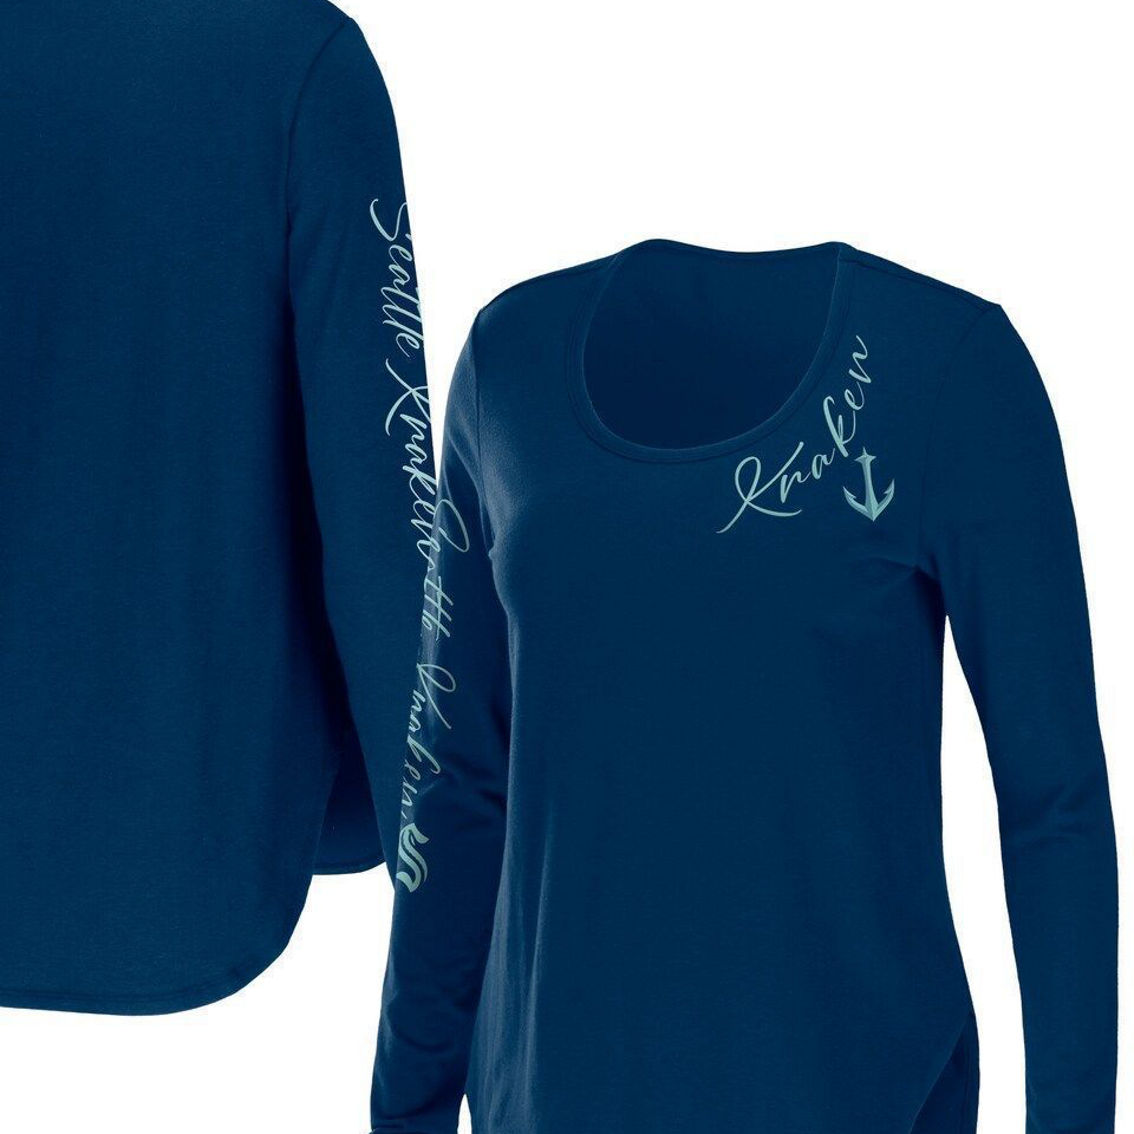 WEAR by Erin Andrews Women's Deep Sea Blue Seattle Kraken Team Scoop Neck Long Sleeve T-Shirt - Image 2 of 4